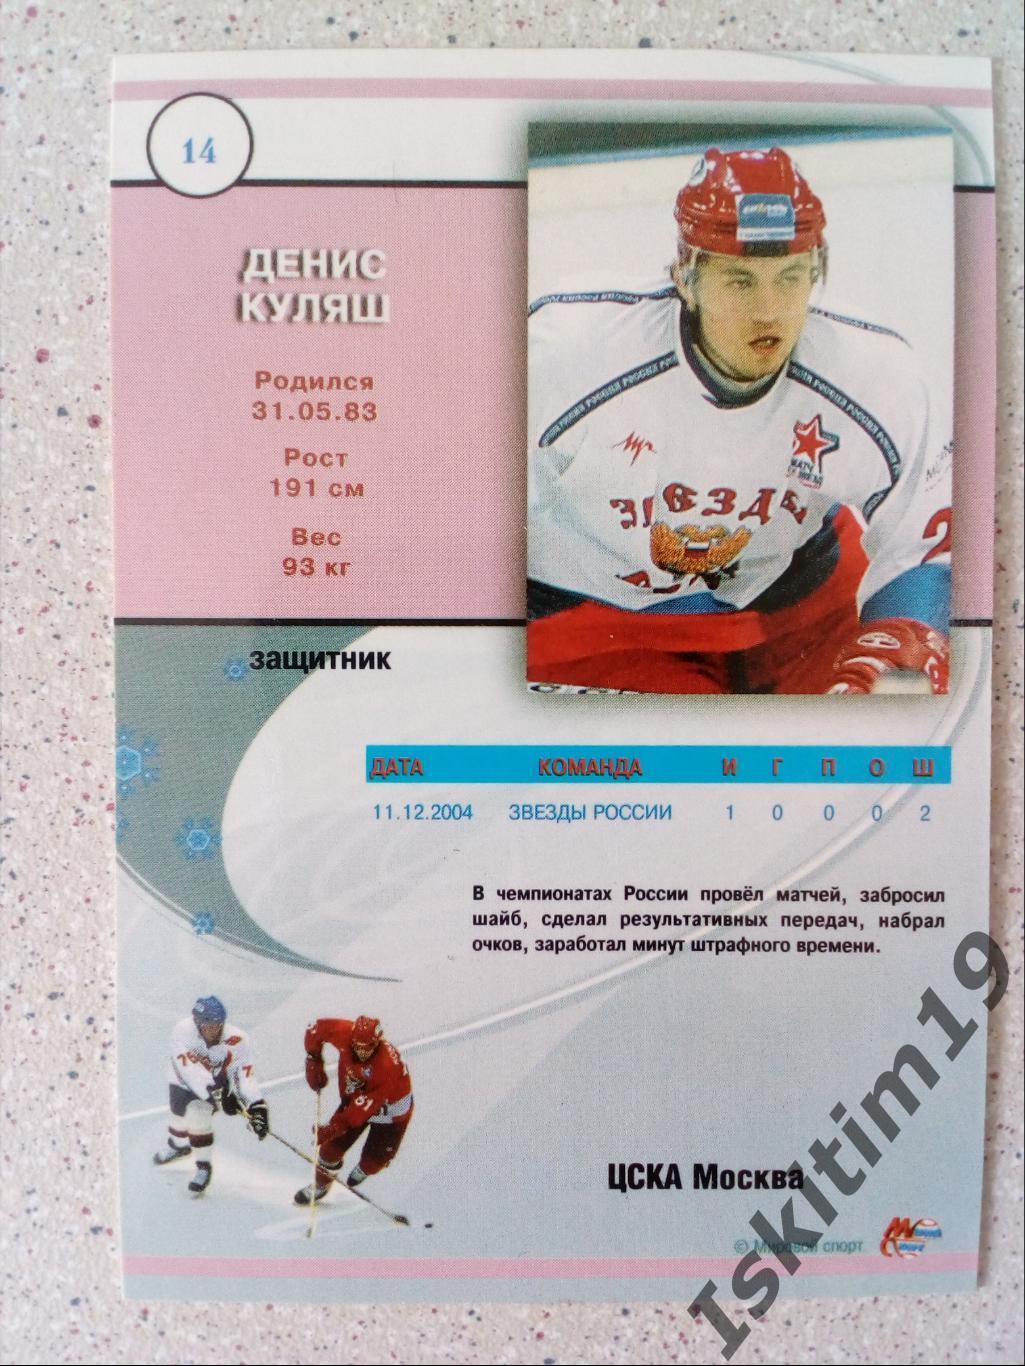 Денис Куляш № S 14 Мировой спорт. Российский хоккей 2004-2005 1